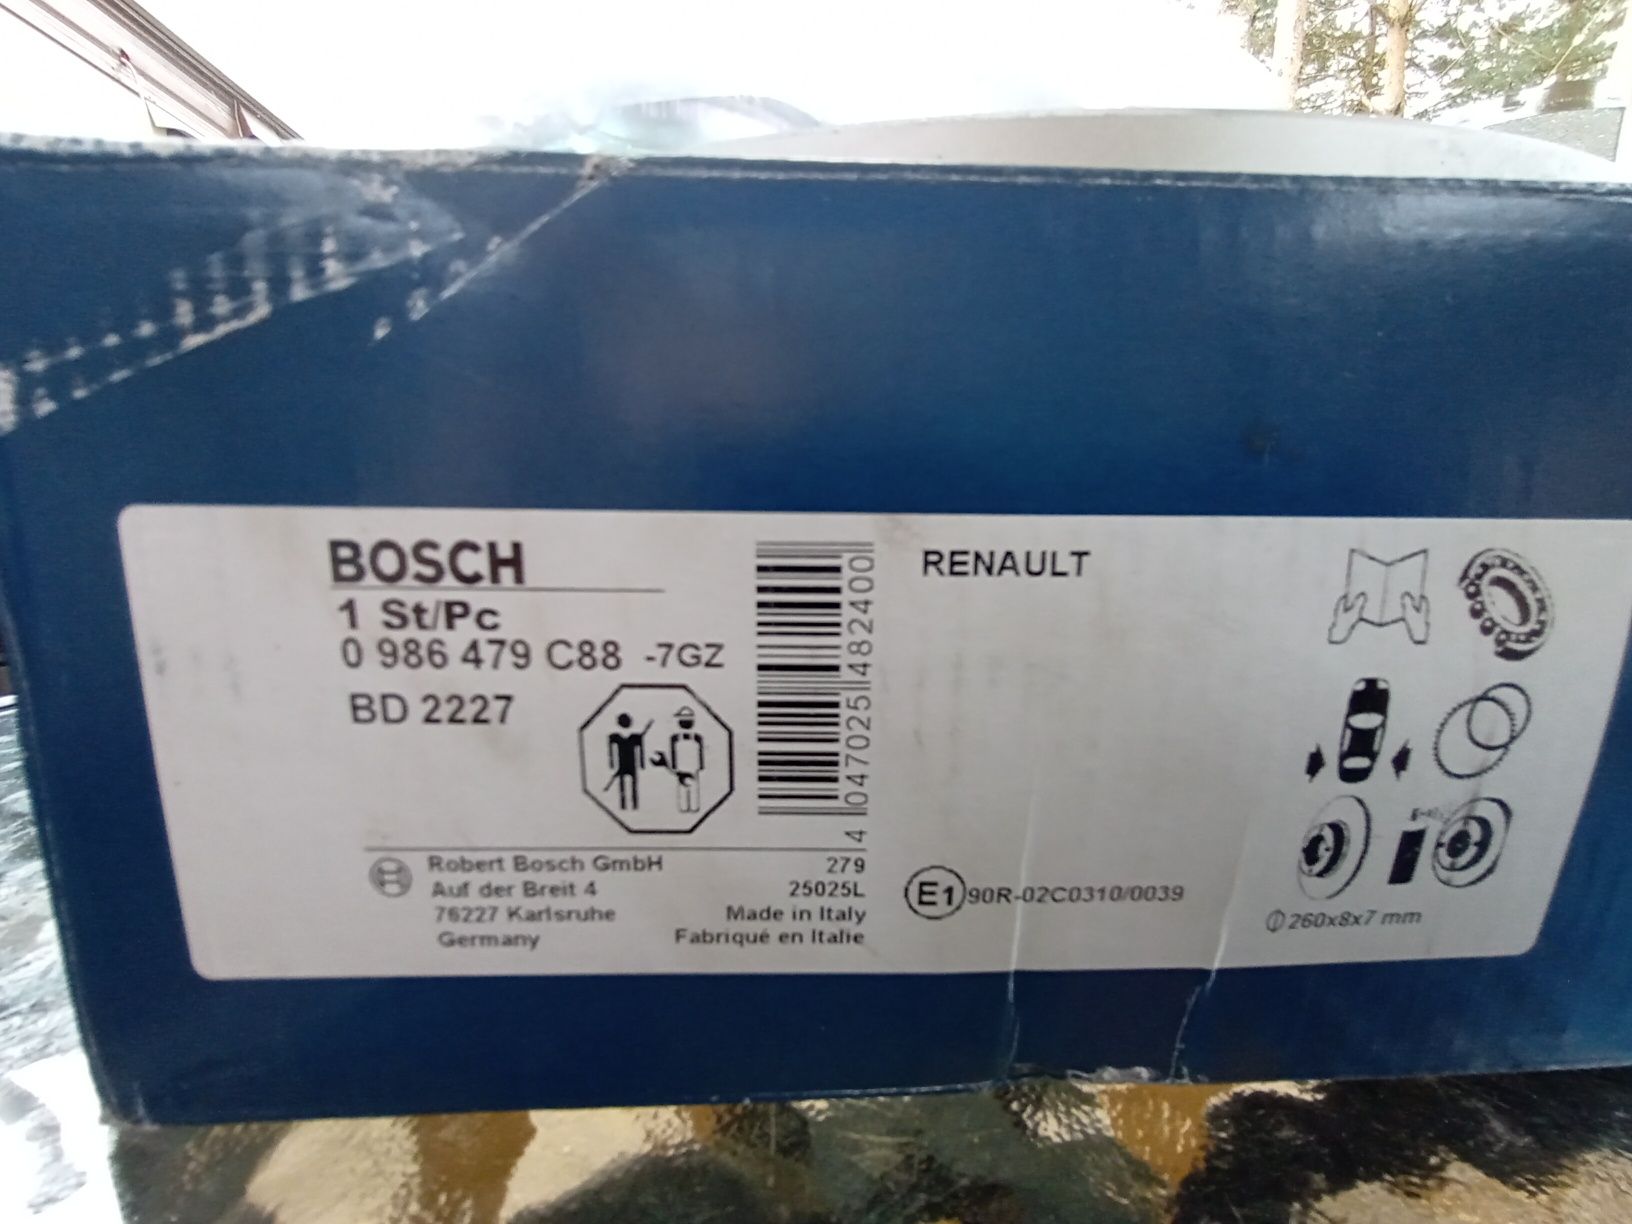 Tarcza hamulcowa tylna - 1szt. Bosch do Renault. Wyprzedaż